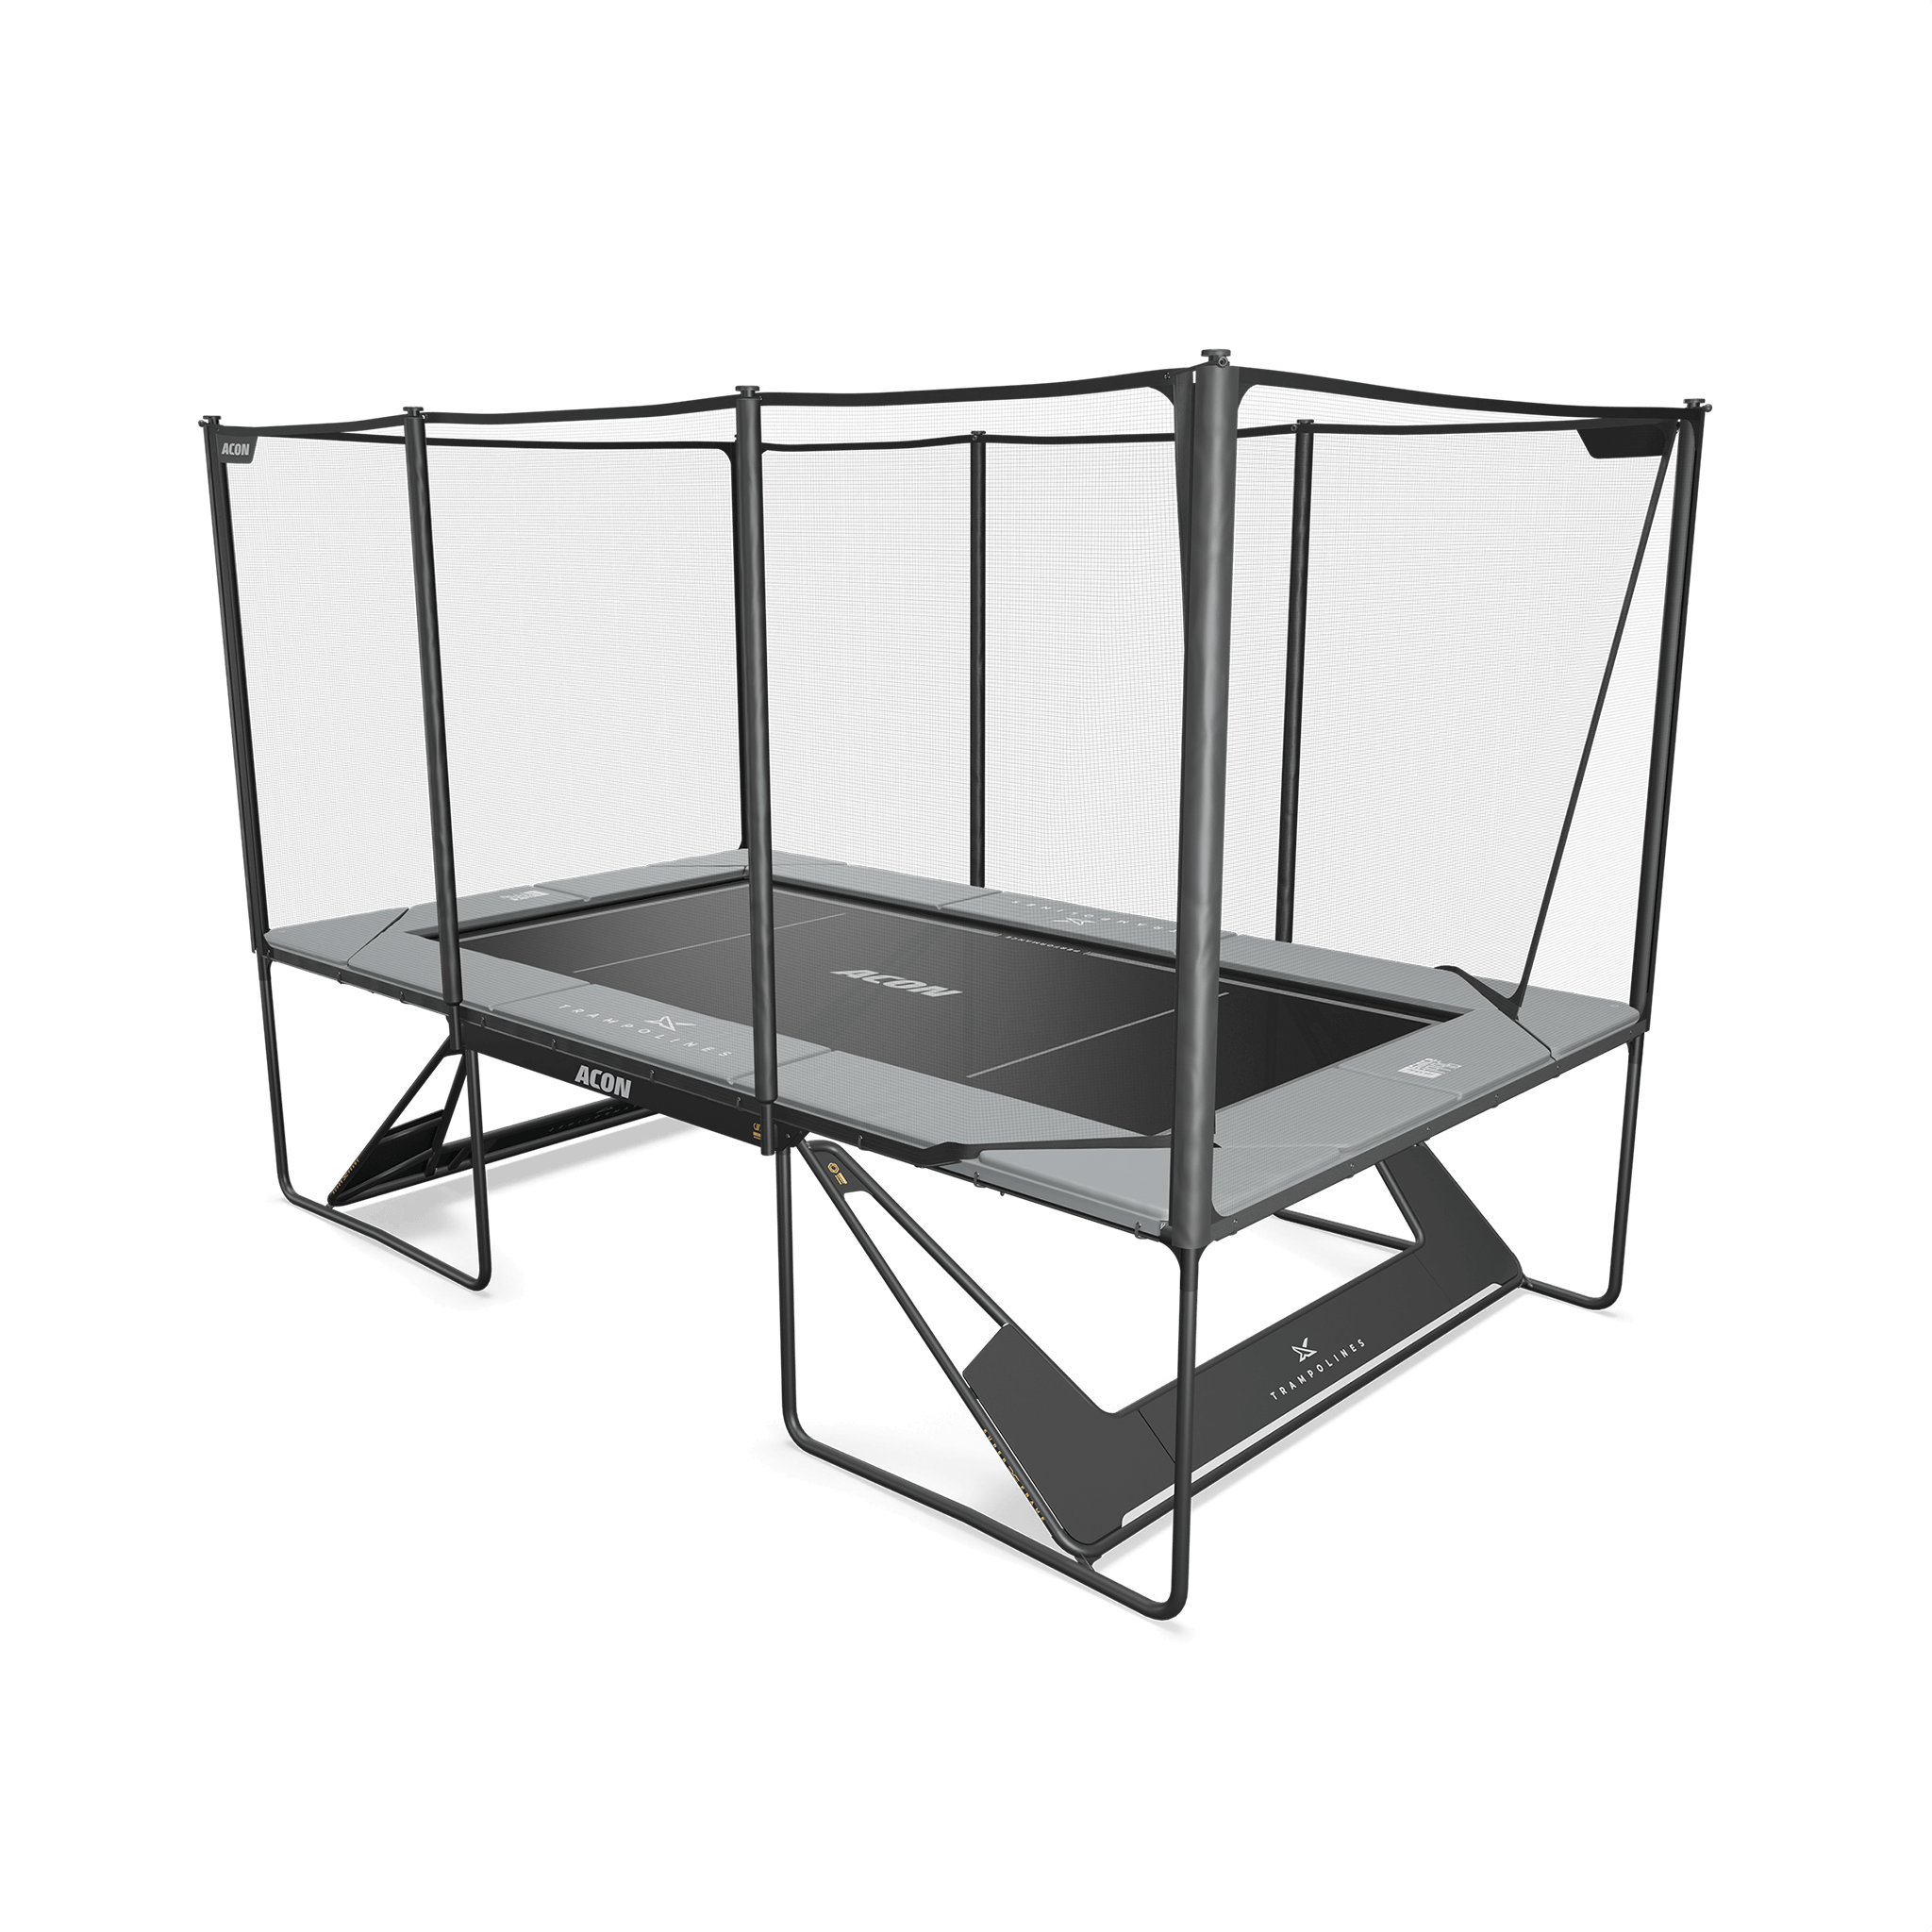 Kuva harmaasta Acon X trampoliinista, johon on asennettu Performance-matto